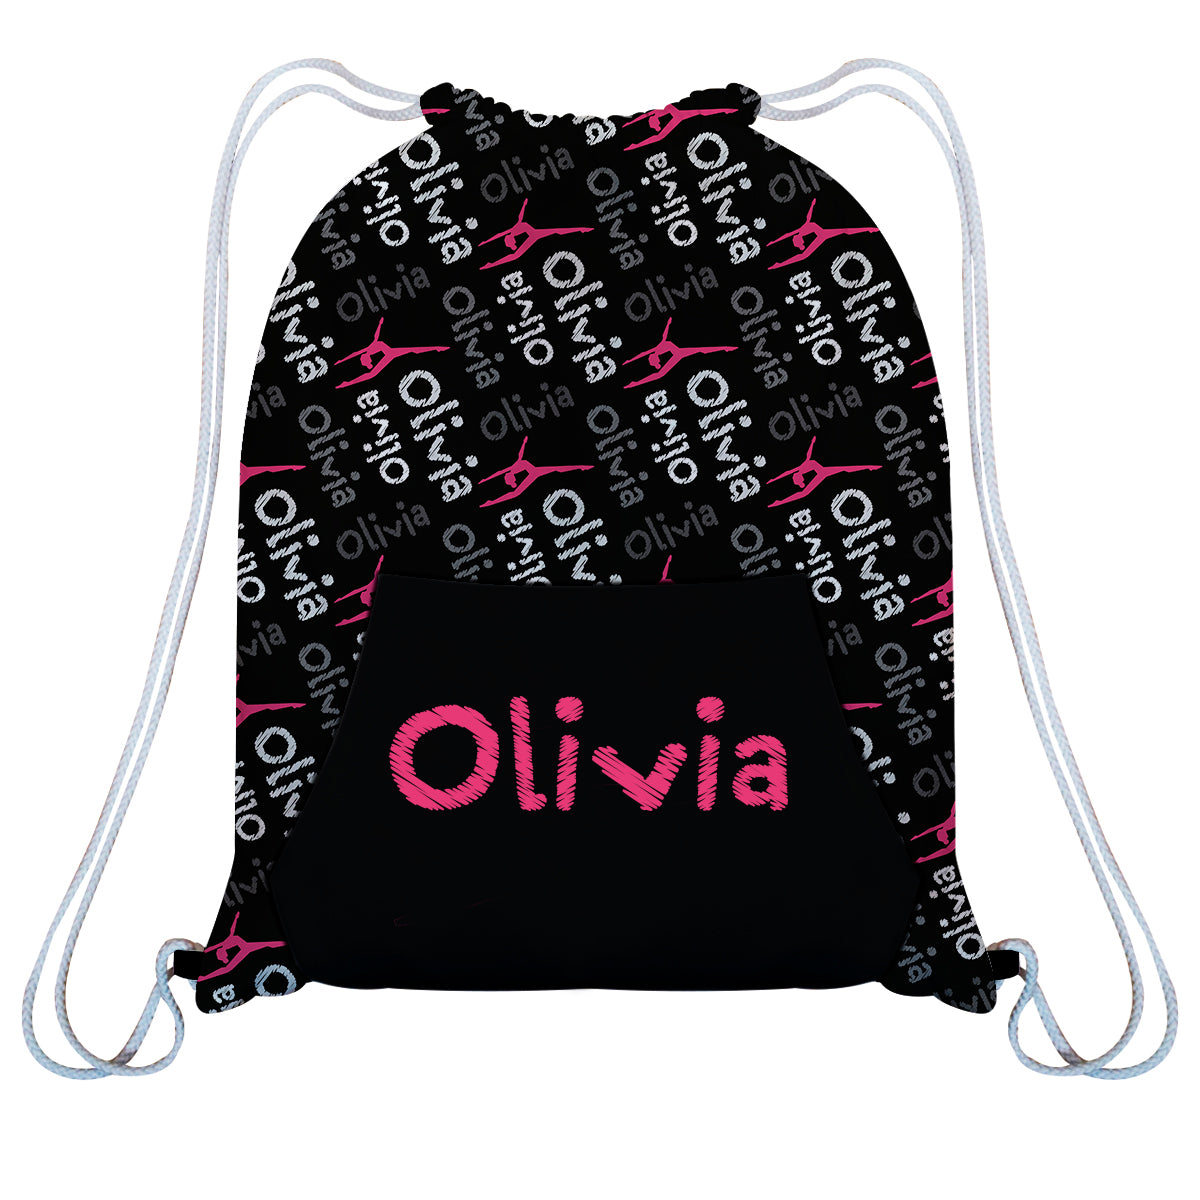 Black and pink gymnast girls gym bag with kangaroo pocket - Wimziy&Co.